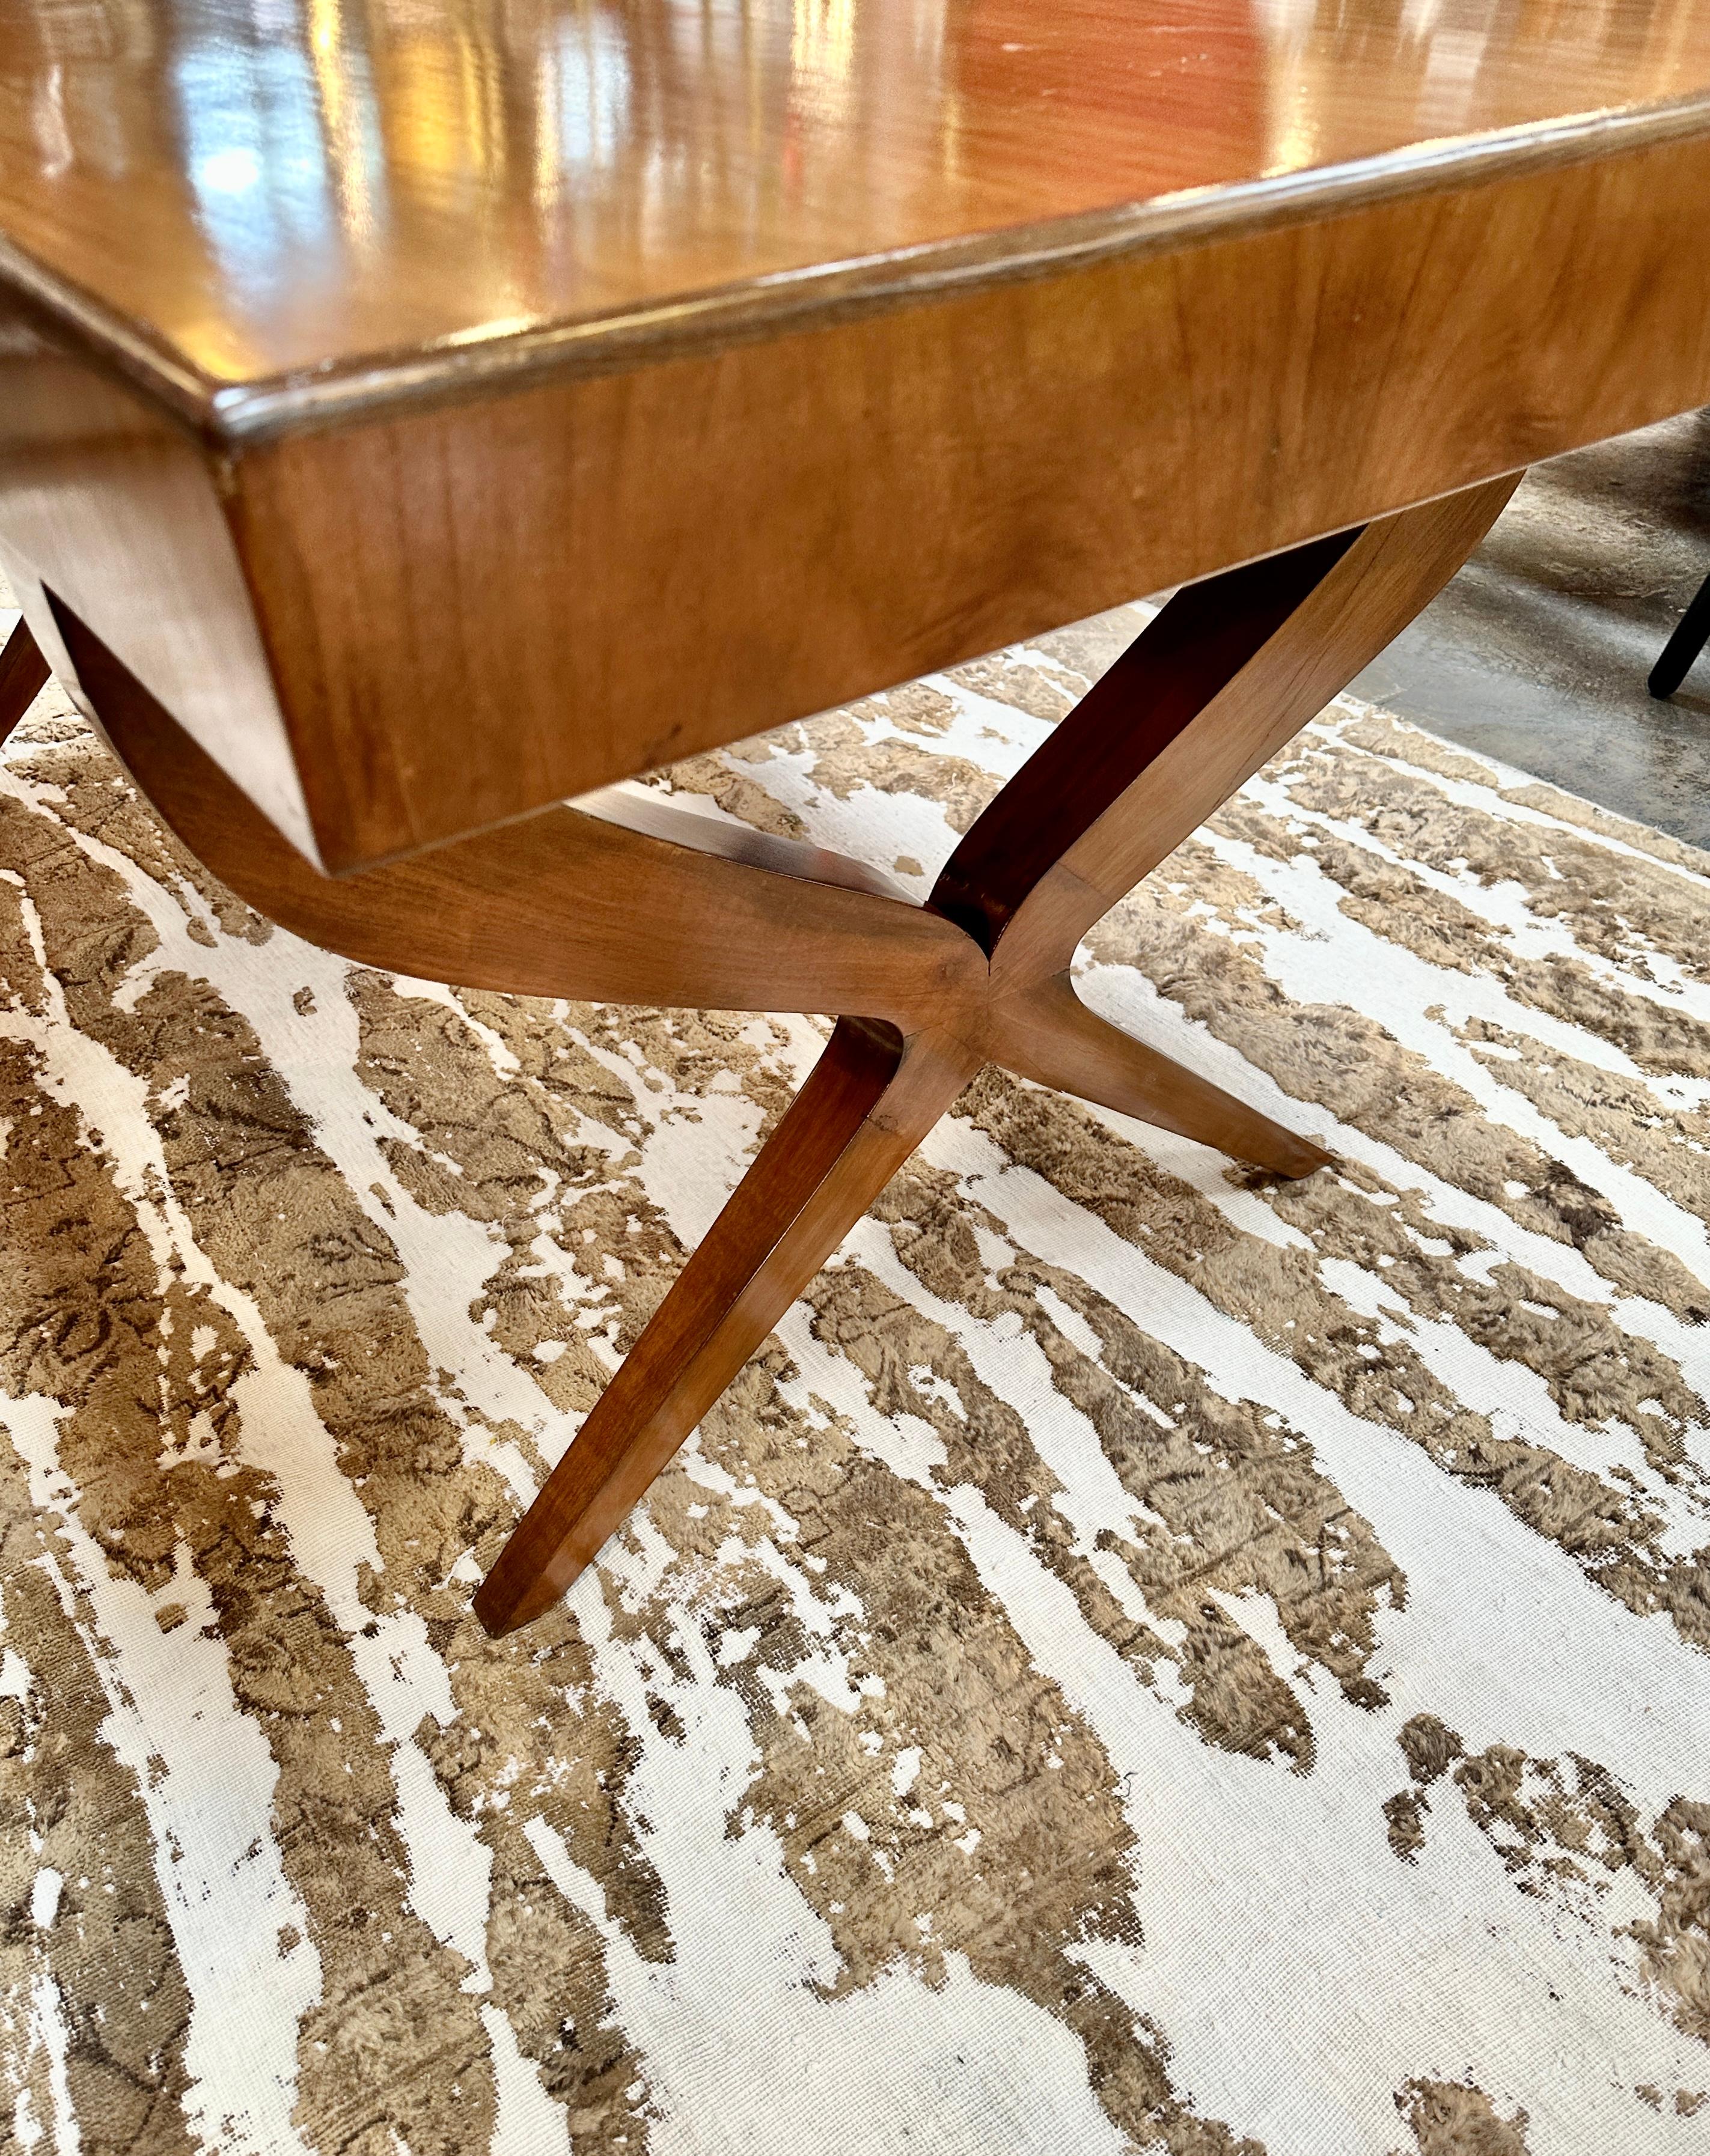 Extraordinaire bureau/table d'écriture en merisier avec pieds croisés par Paolo Buffa. Cette table a environ 70 ans et a été restaurée comme vous pouvez le voir sur les photos. La forme est incroyable et l'ambiance est incroyable.